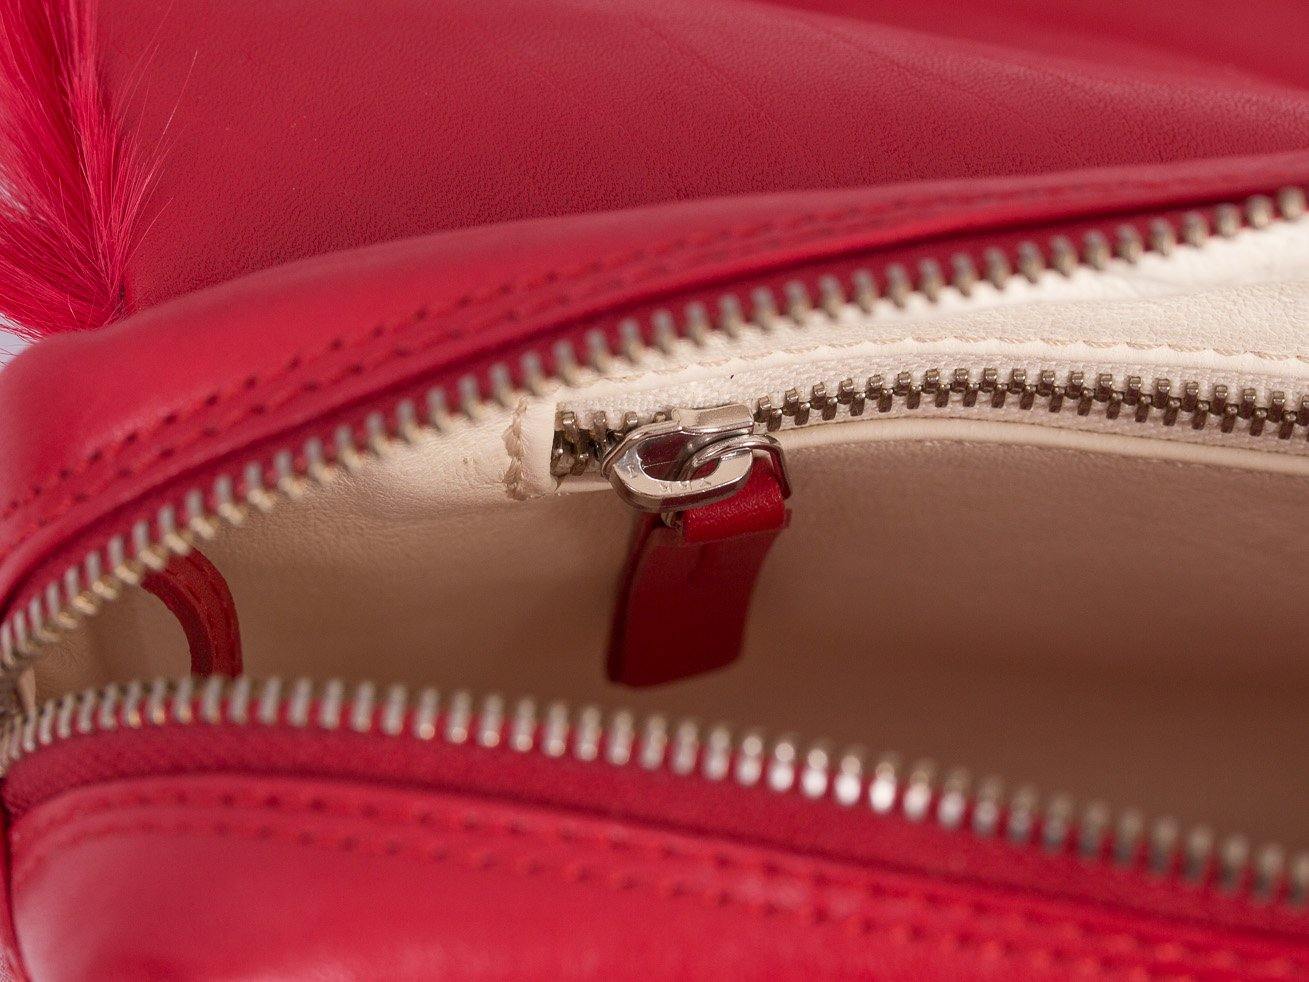 sherene melinda springbok hair-on-hide red leather shoulder bag Stripe inside